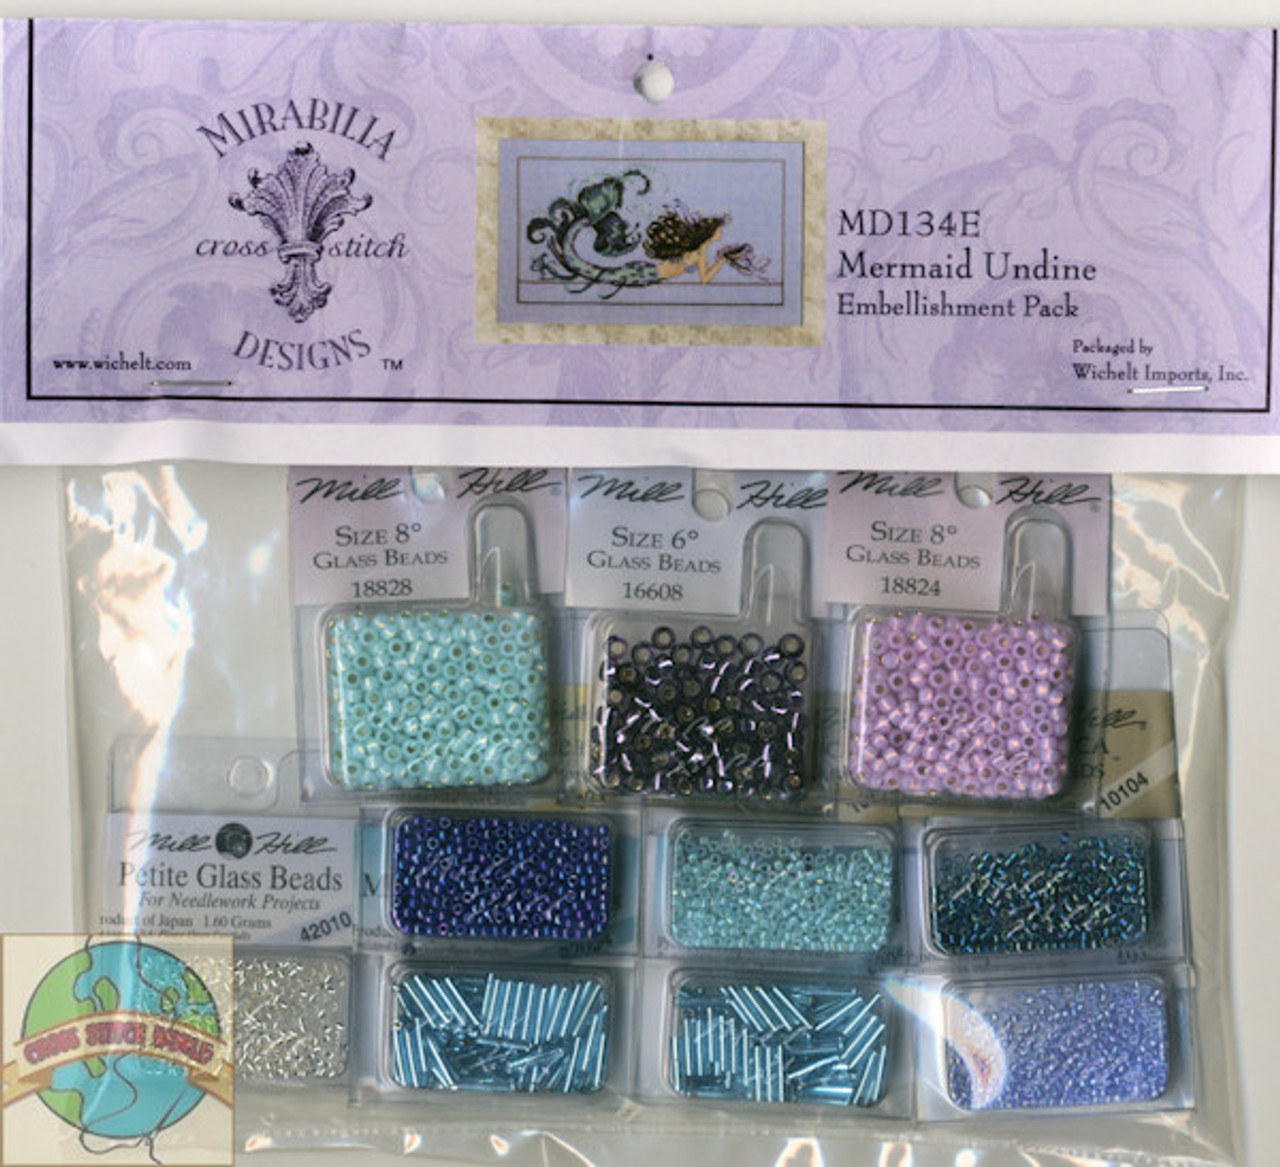 Mirabilia Embellishment Pack - Mermaid Undine